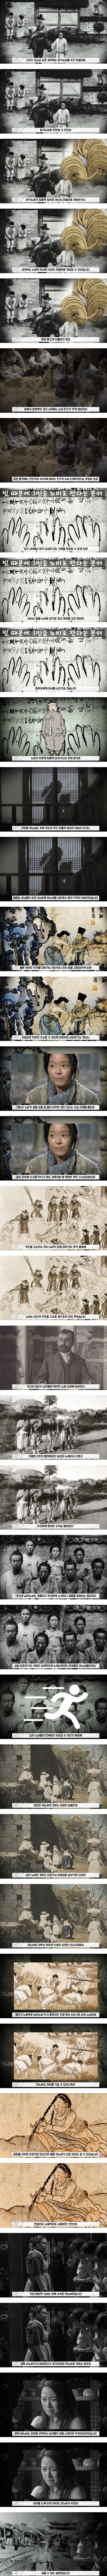 조선의 노비 문화